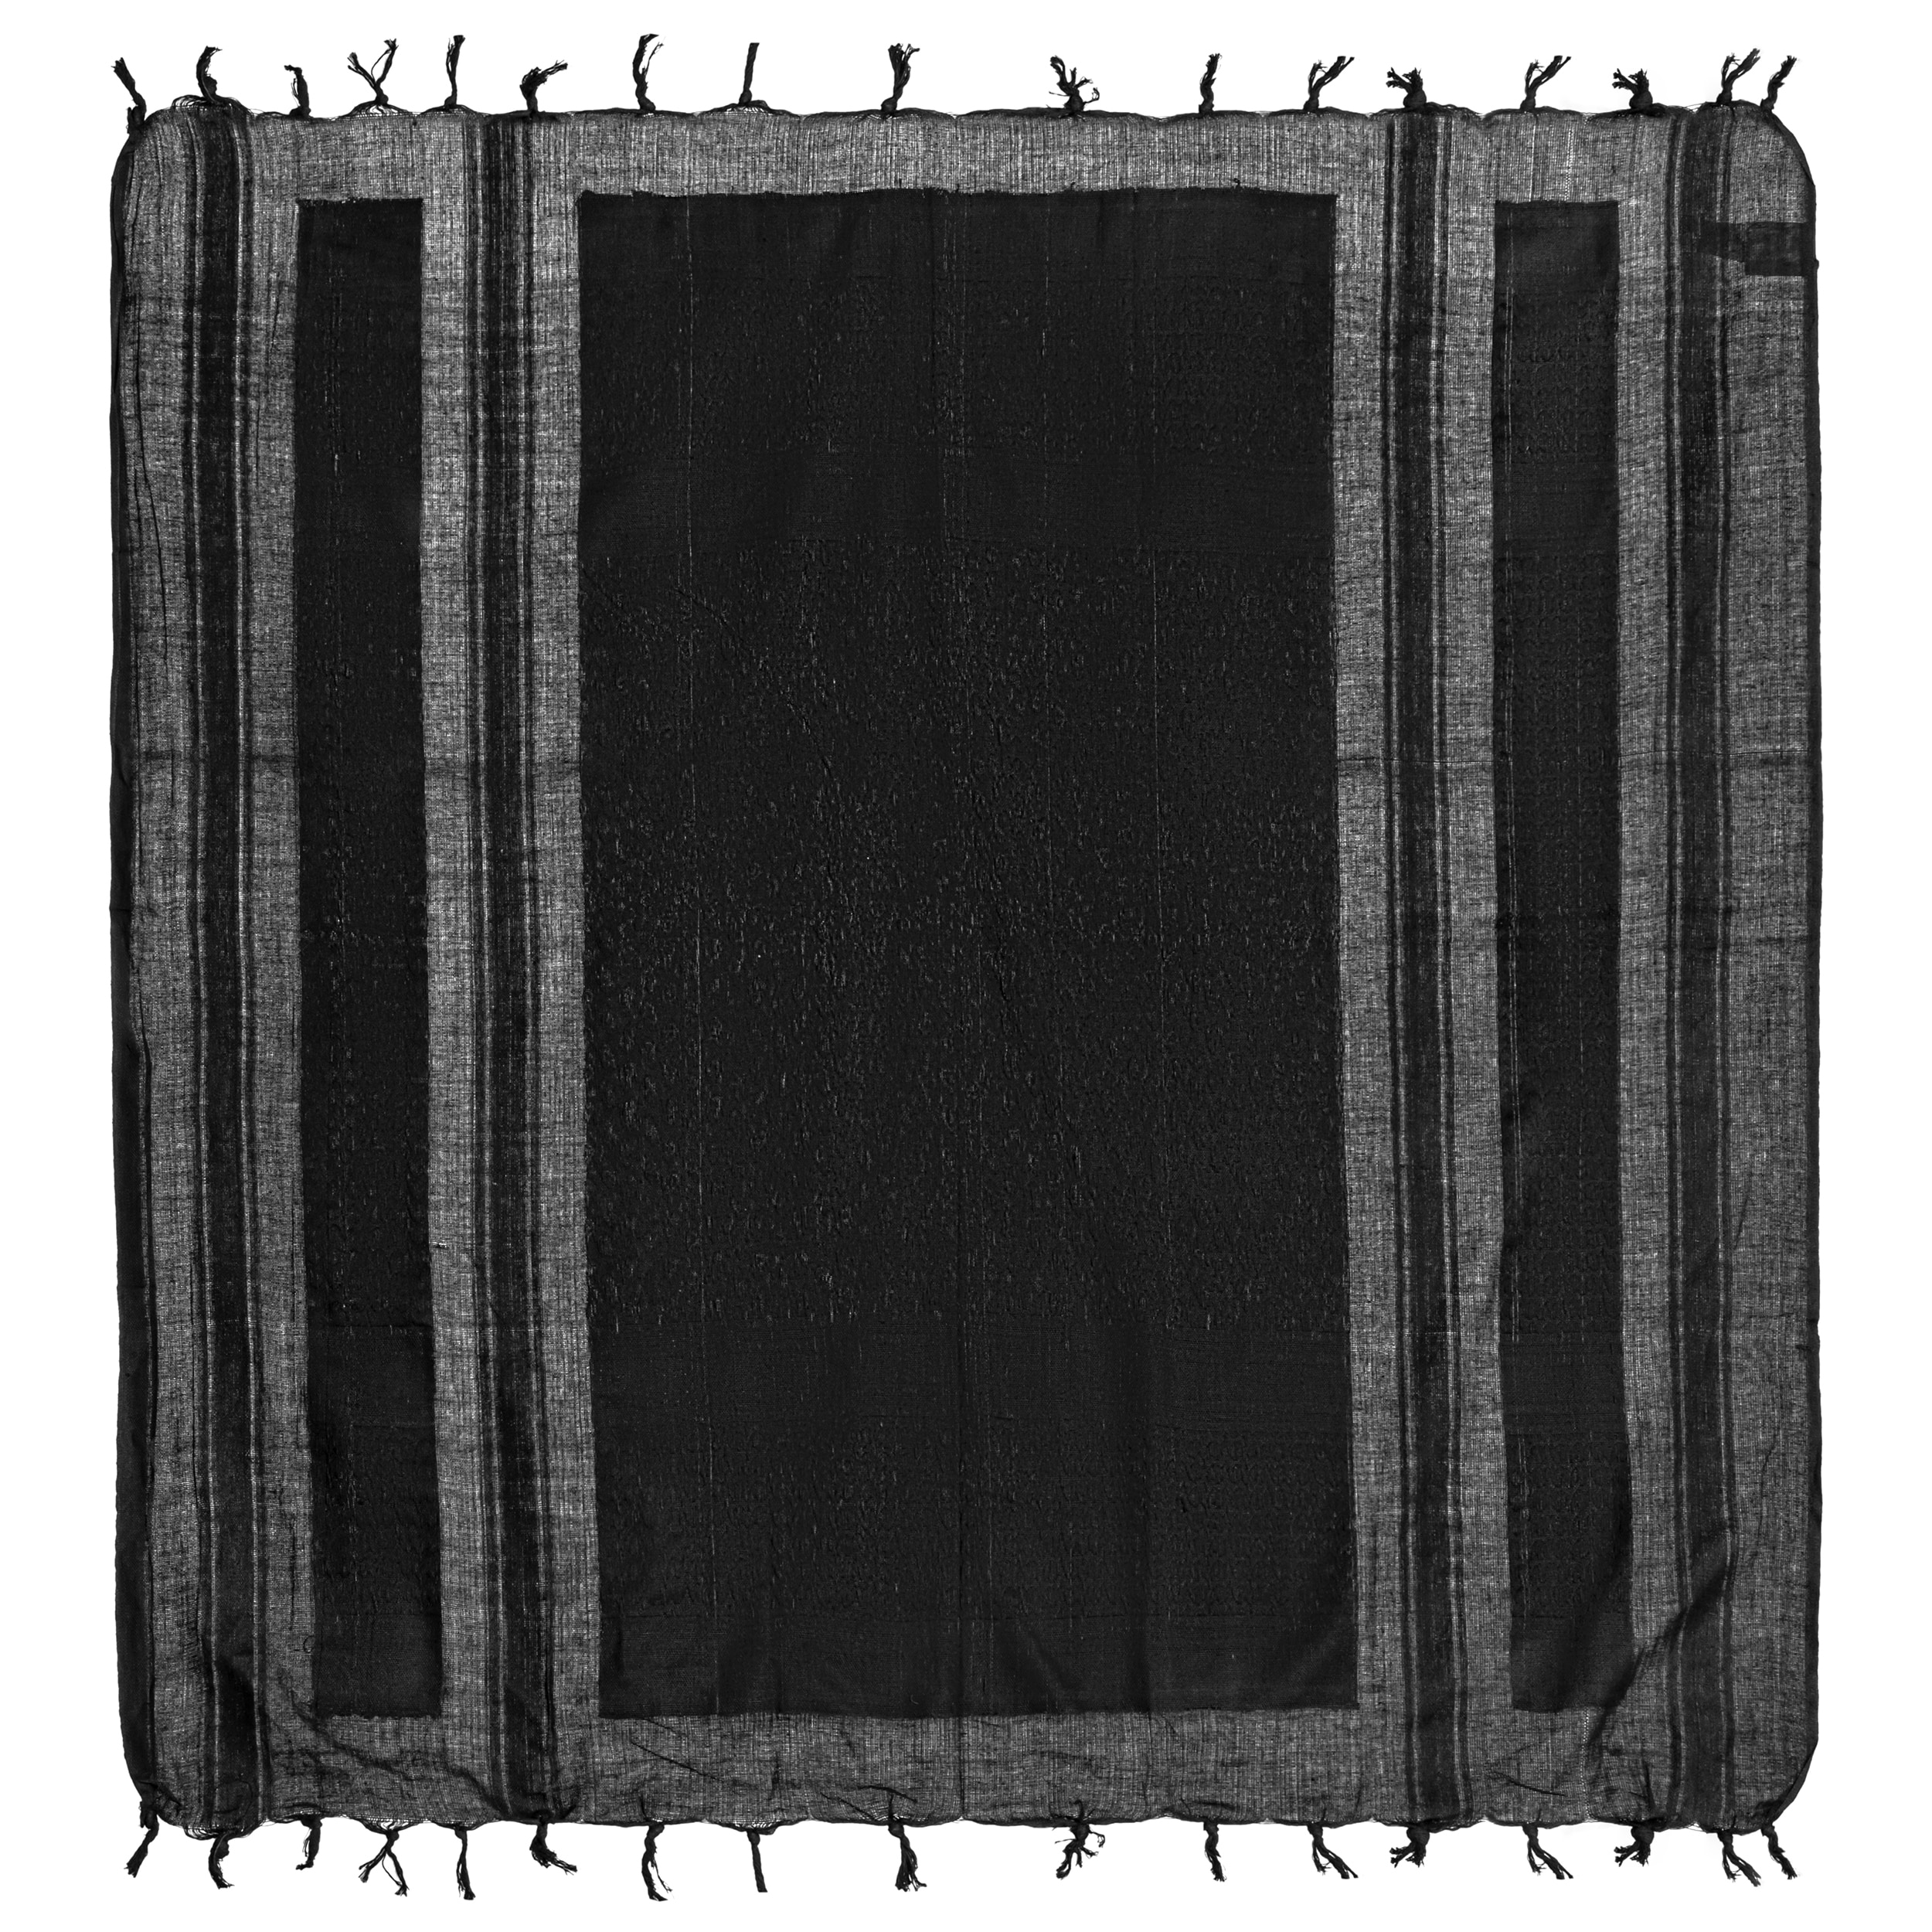 Arafatka chusta ochronna Mil-Tec - Black